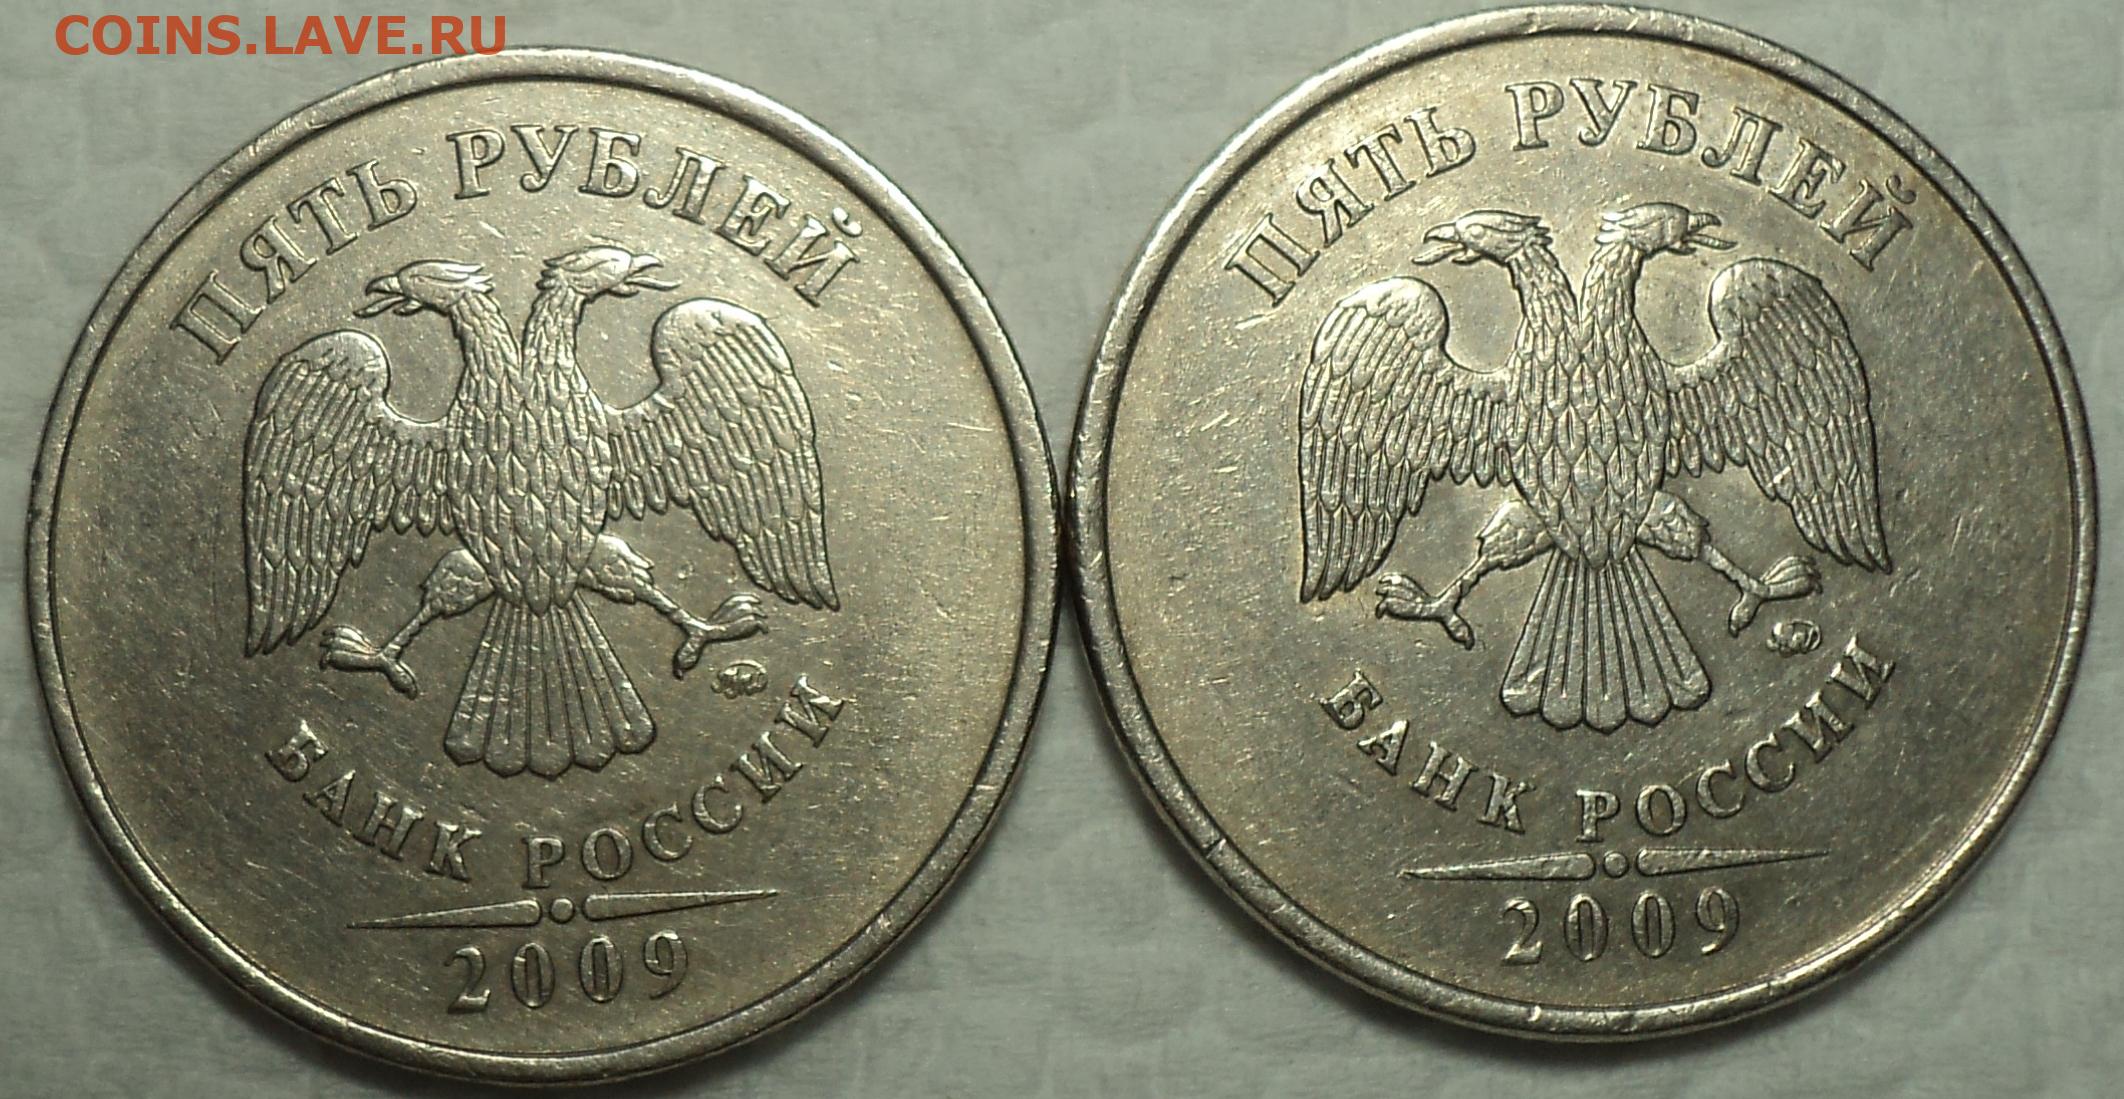 5 рублей 11 года. 5.3Г1 ММД 2009. 1 Рубль 2009 ММД Медно-никель шт.2.2г, сталь шт.2.2г гурт. 2 Рубля 1998 ММД. 5 Рублей Московского монетного двора 1998 года.